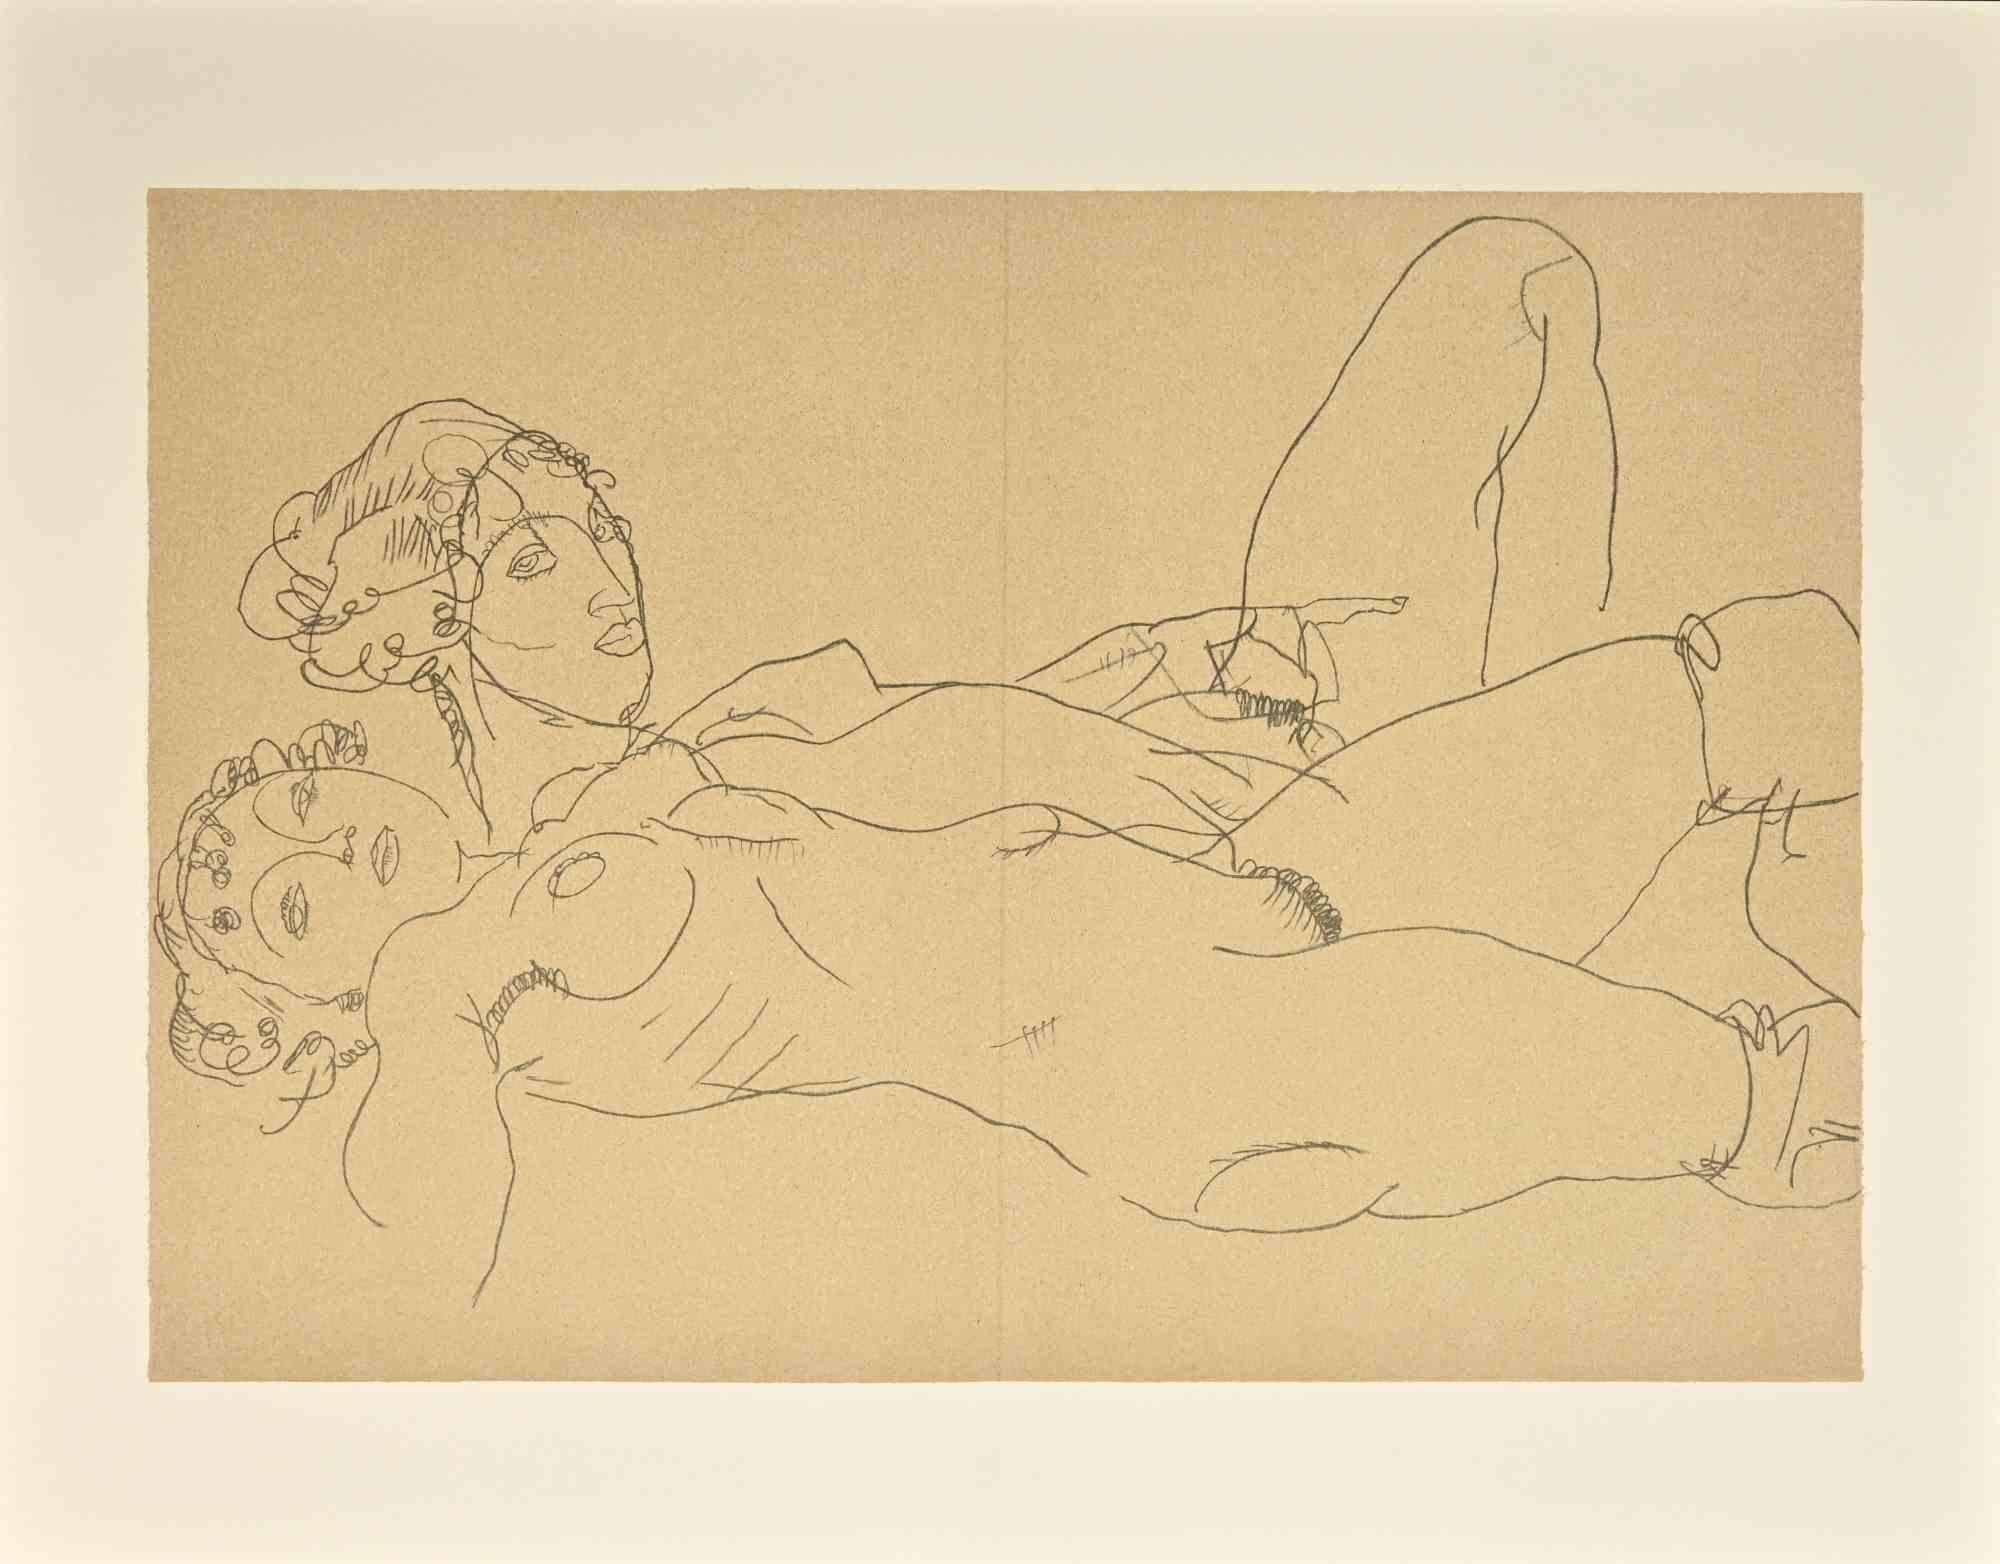 Dos chicas desnudas reclinadas - Litografía - 2007